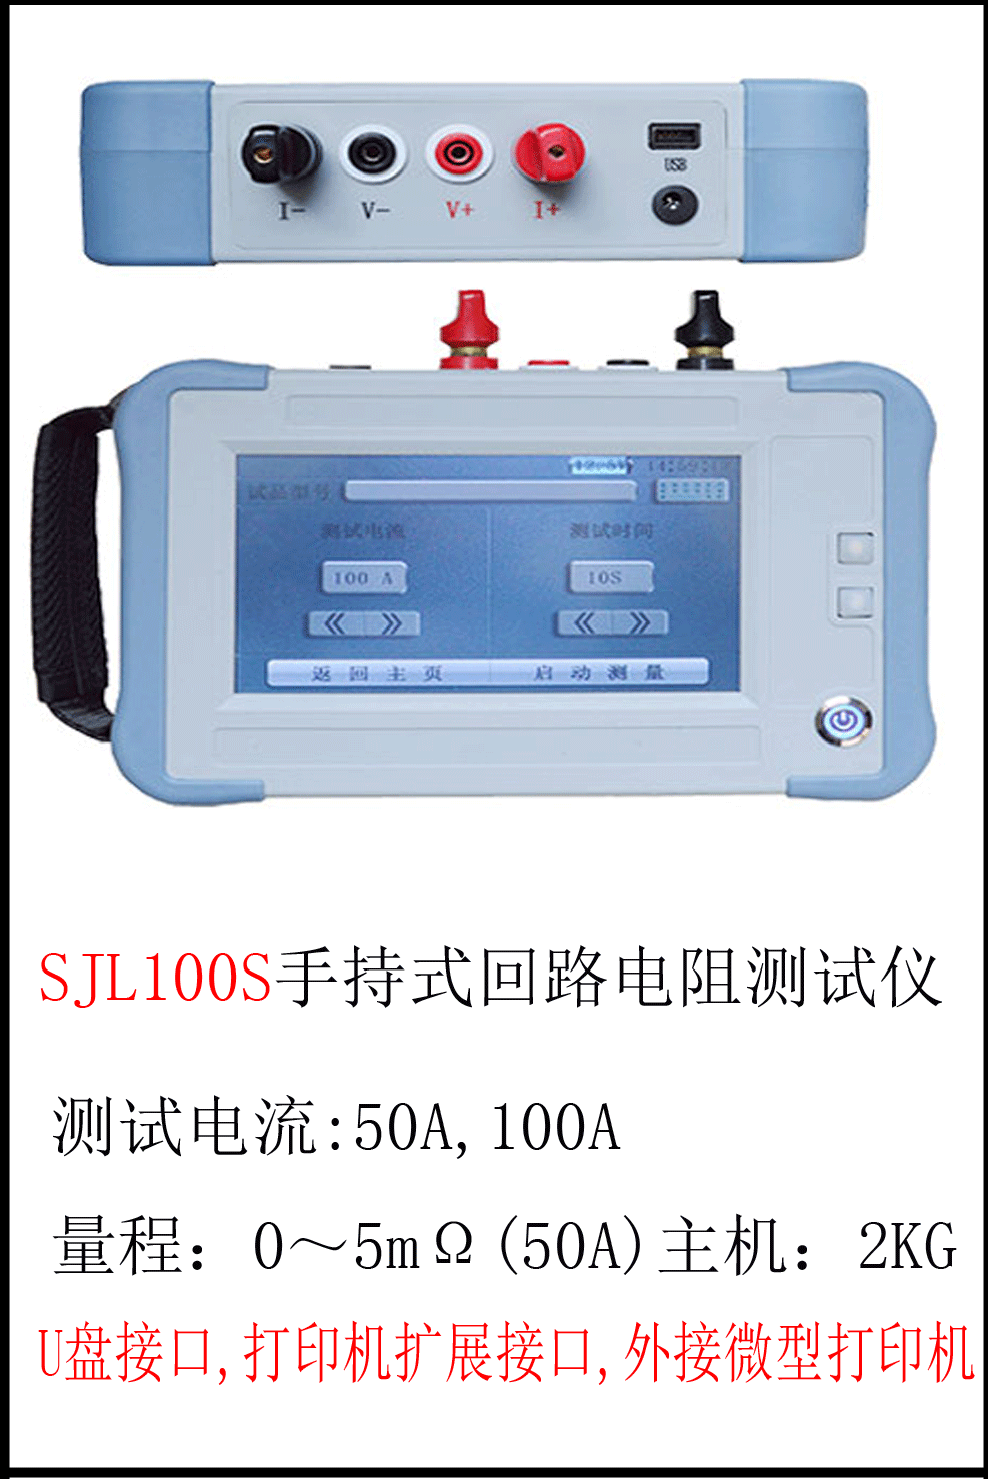 SJL100S 手 持 式 回 路 电 阻 测 试 仪 